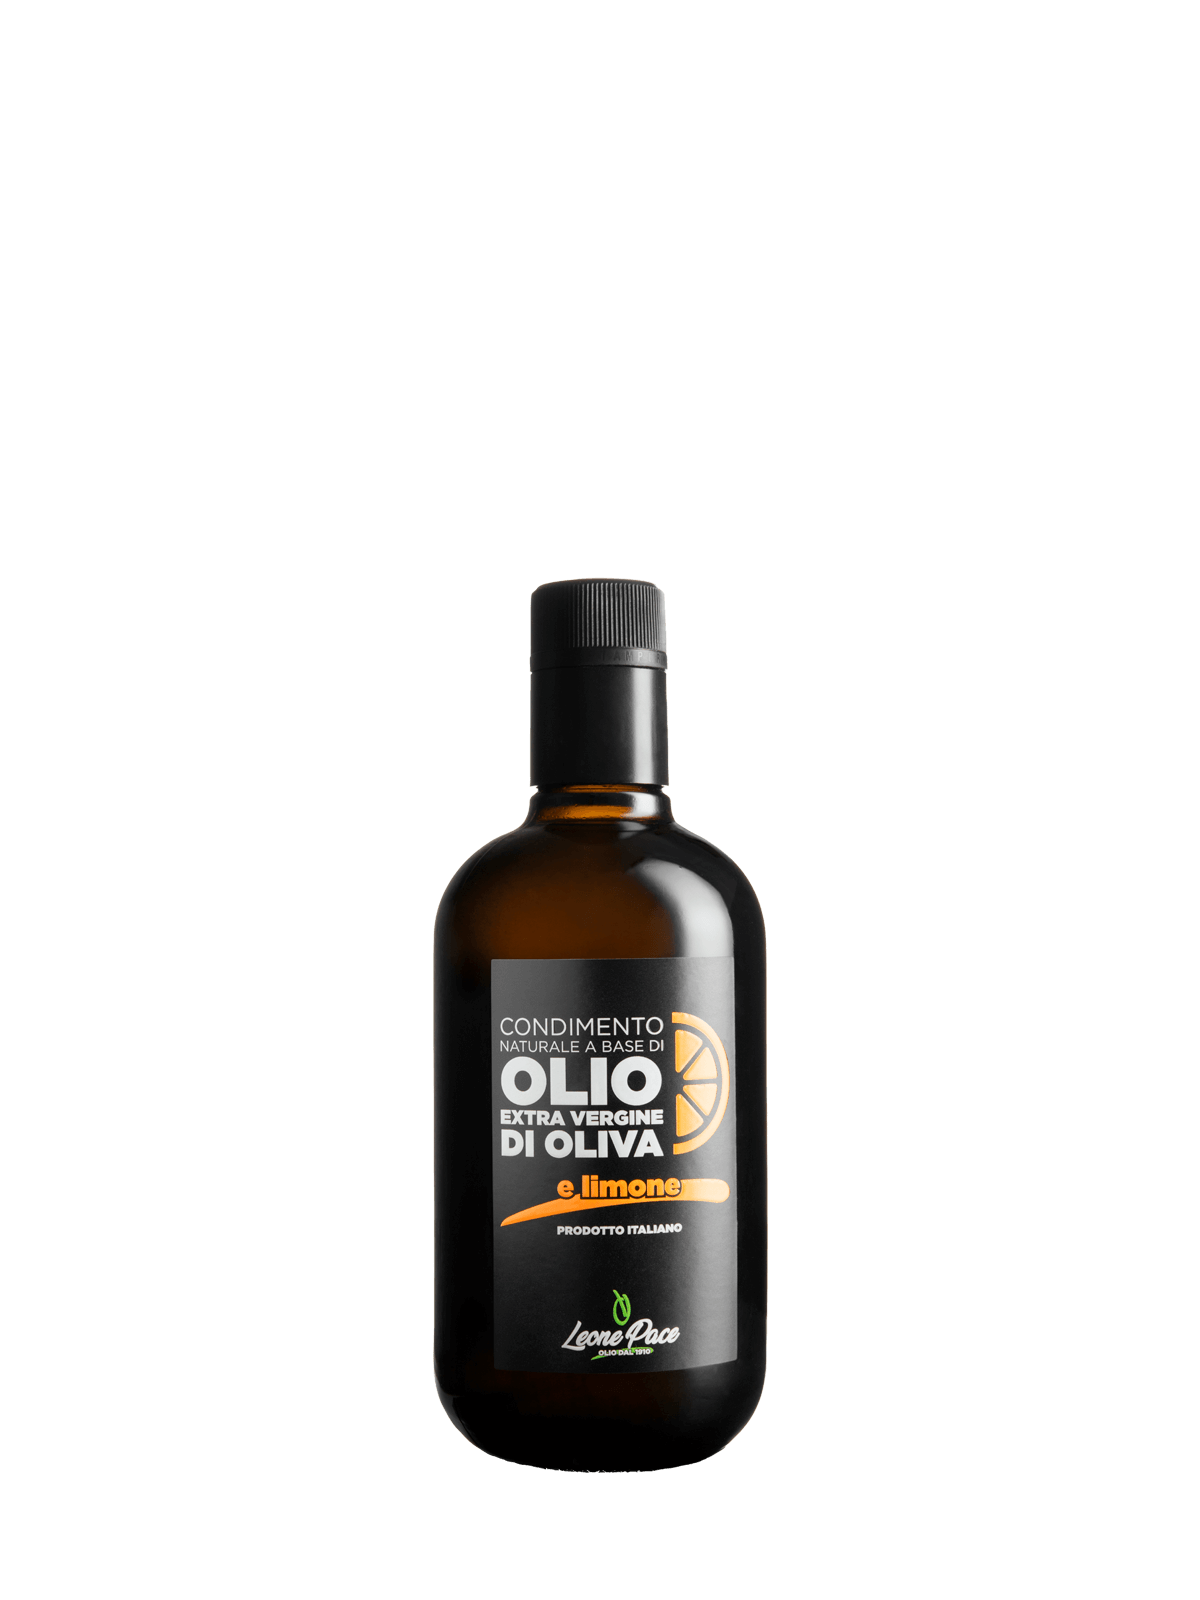 Condimento naturale a base di Olio EVO aromatizzato al limone - Prodotto a freddo - Bottiglia vetro 0,5L - Frantoio Leone Pace